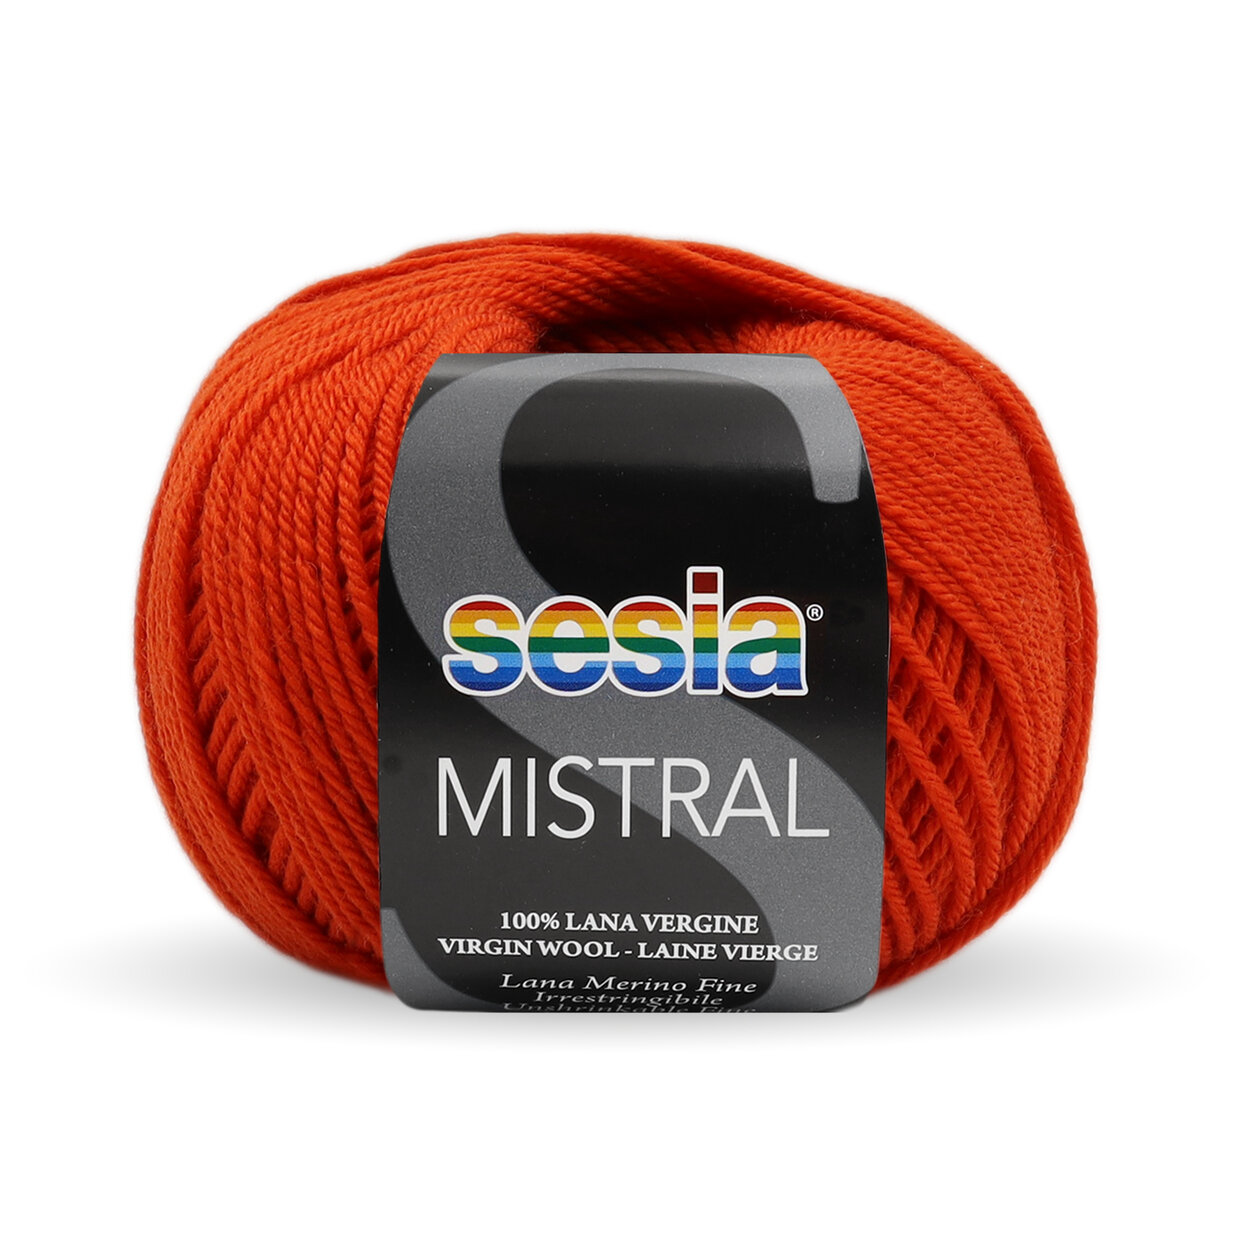 SESIA Mistral - 3785 arancio